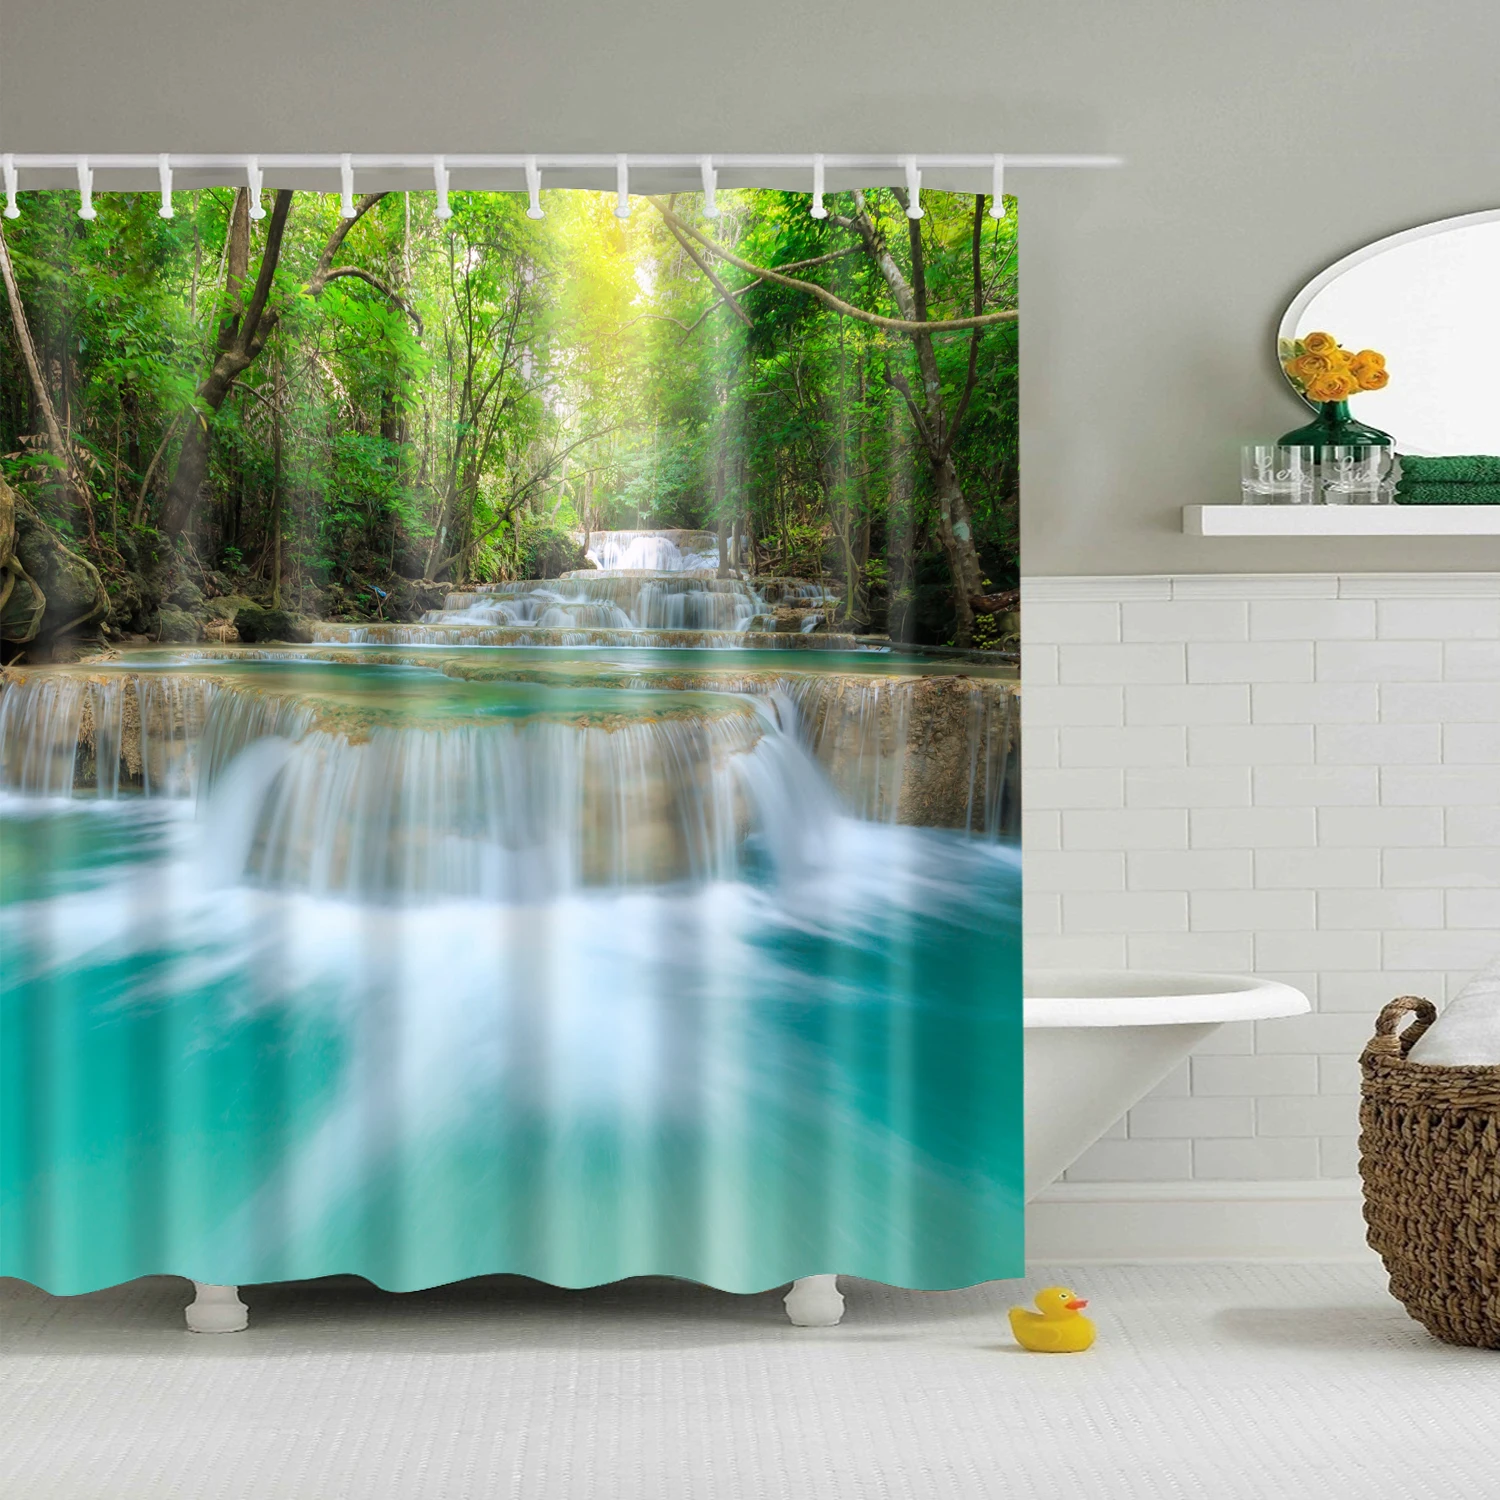 Современная занавеска для душа с морским пляжем и пейзажем, синяя занавеска для ванной, 3D затемненная занавеска для душа, большая занавеска 180x200 см для ванной комнаты